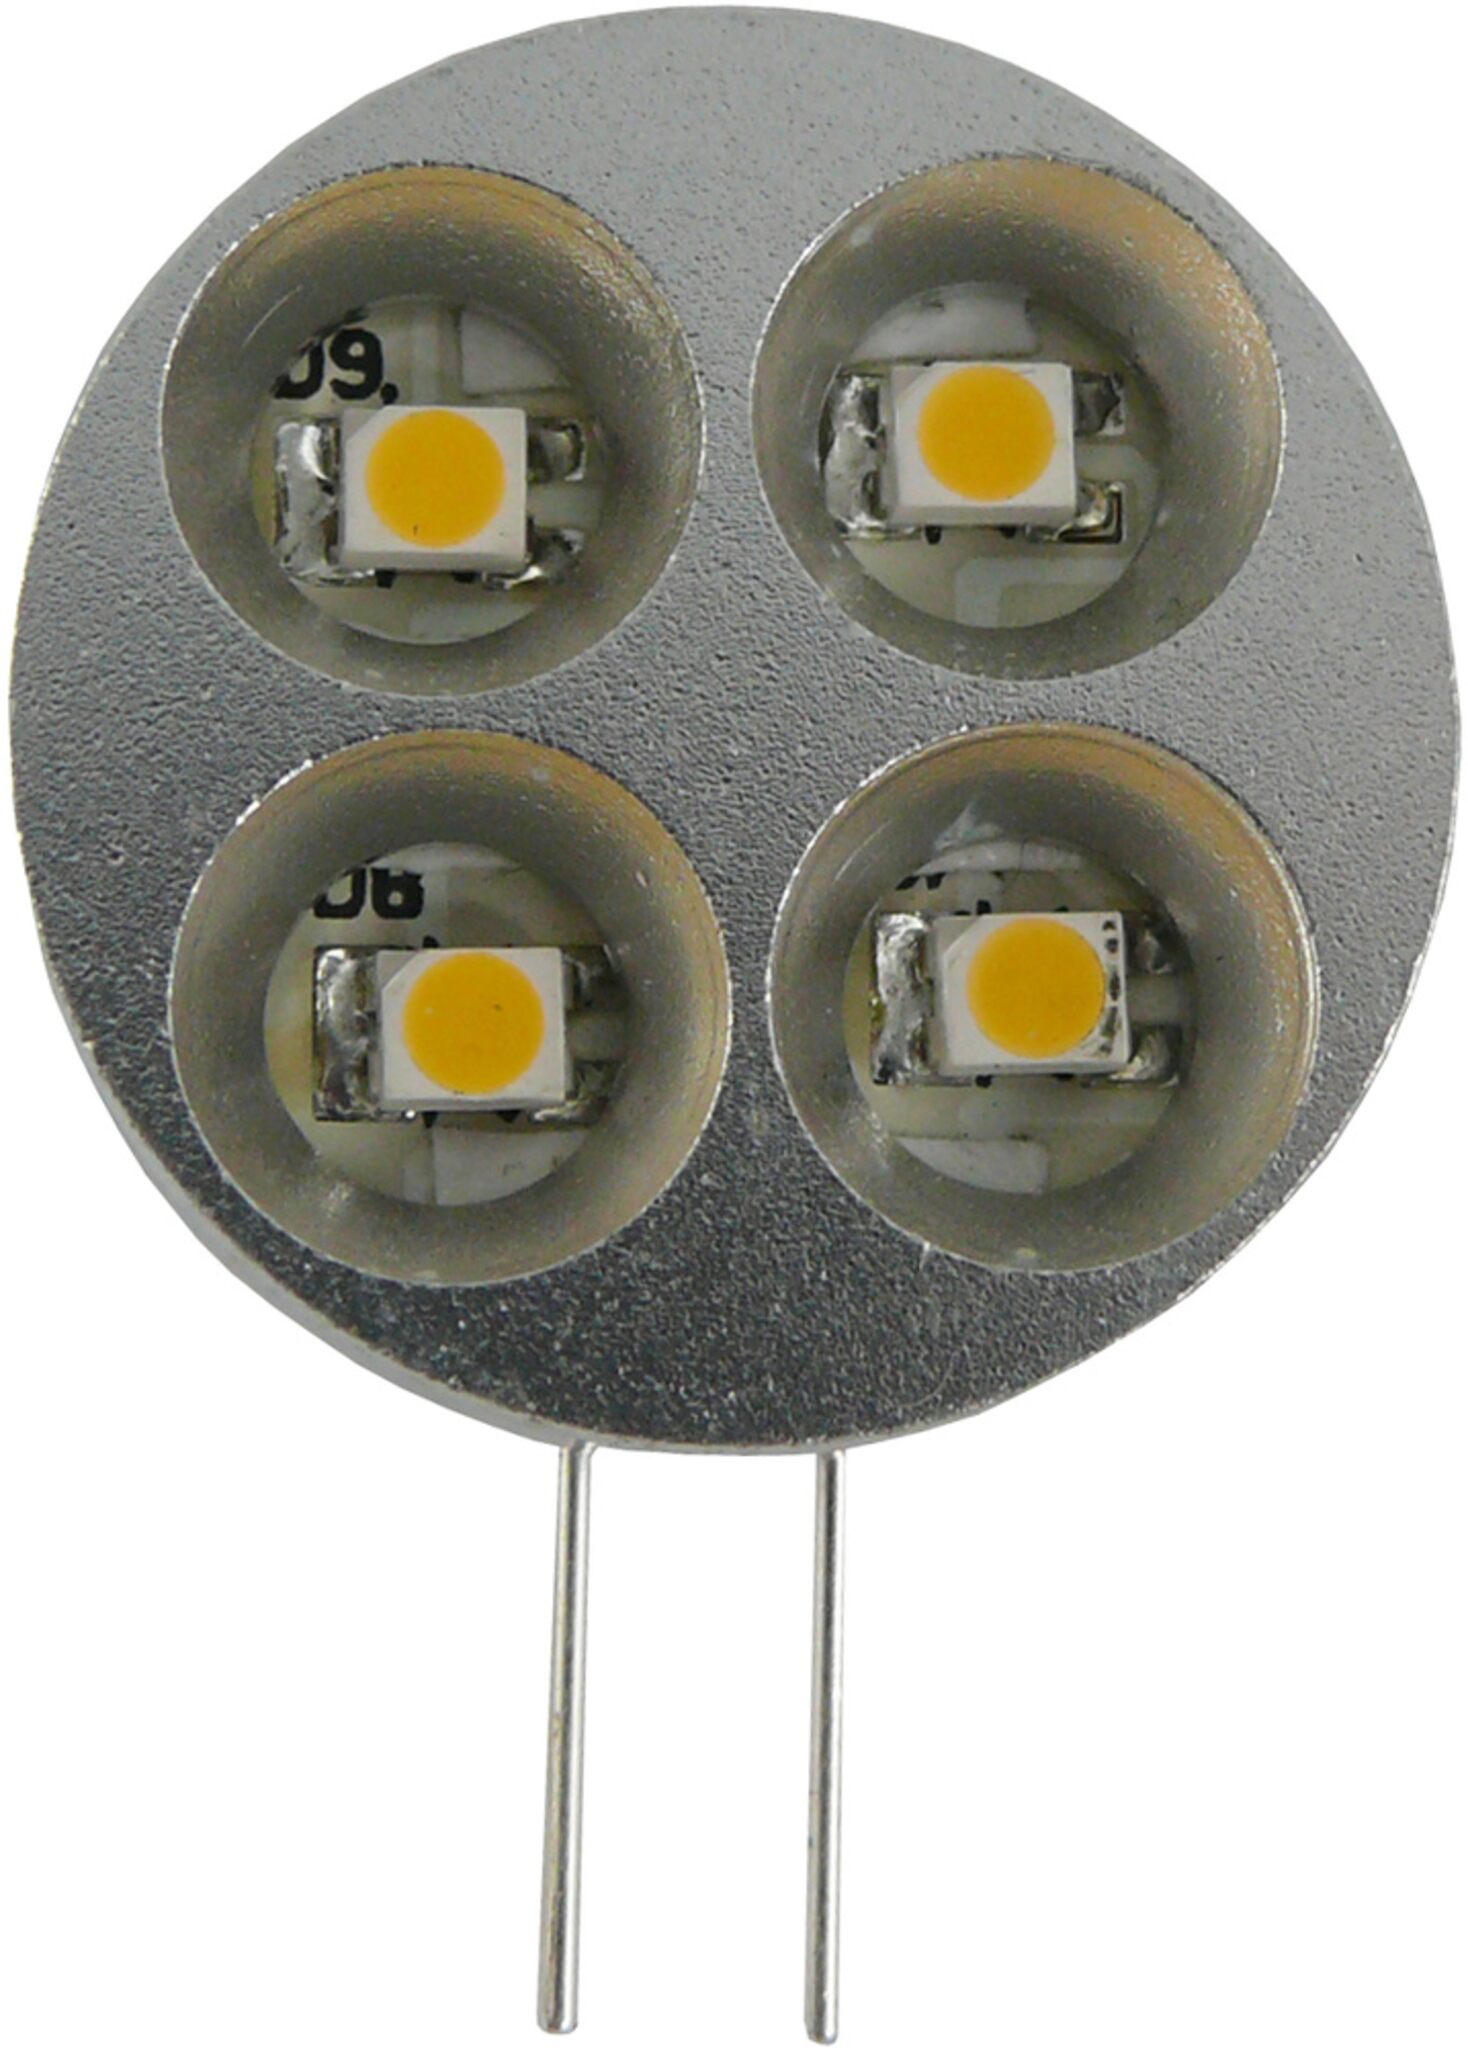 15-LED Spot - 120 degrees, MR16/GU